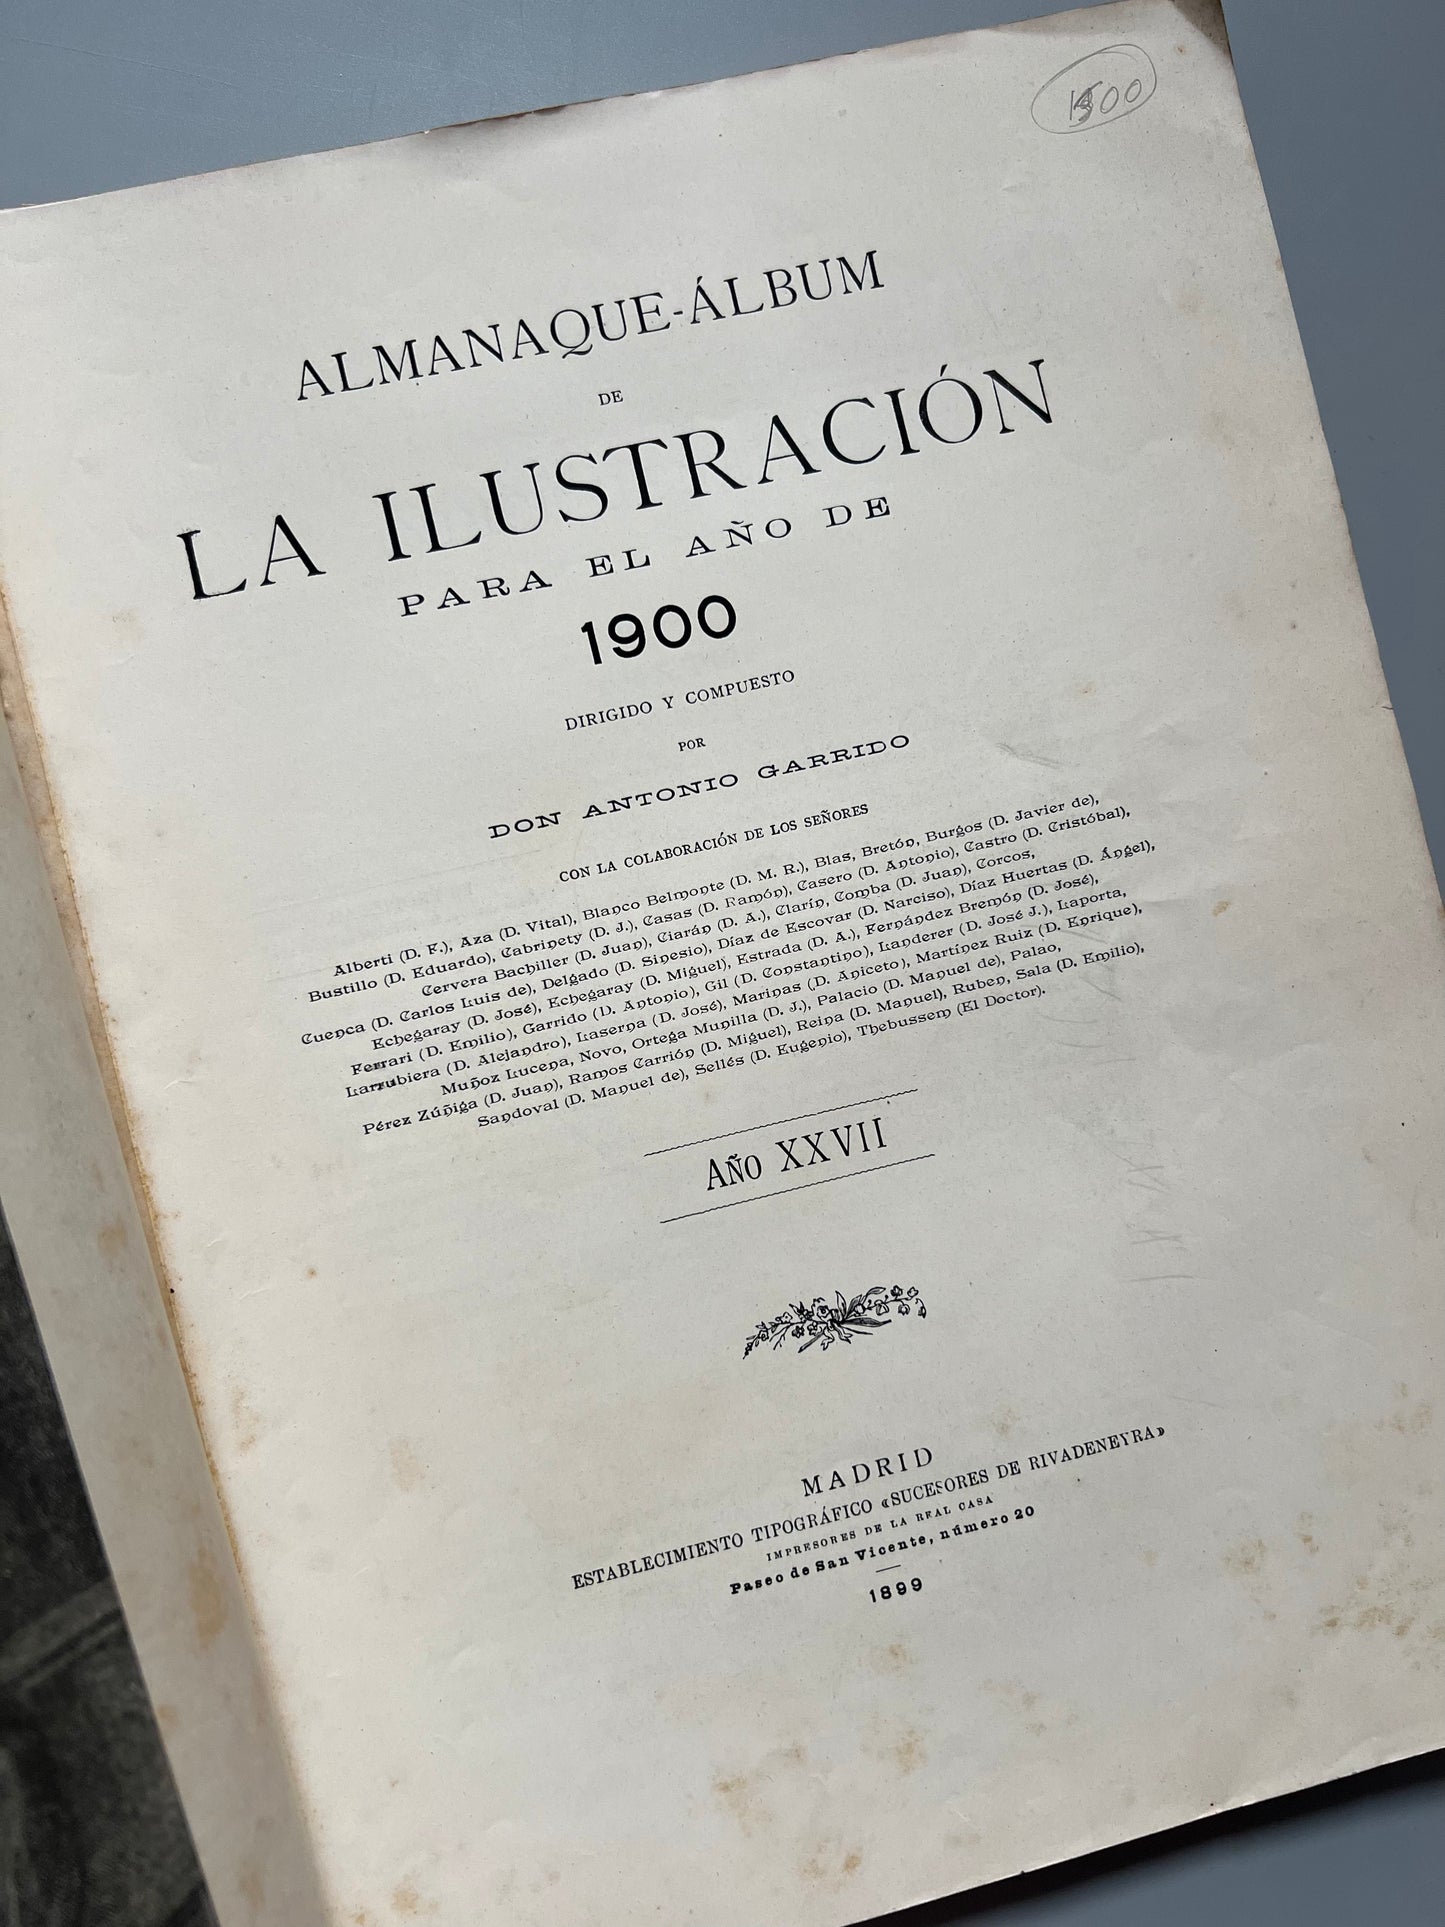 Almanaque para 1900 de La Ilustración Española y Americana (portada de Ramón Casas) - Madrid, 1899